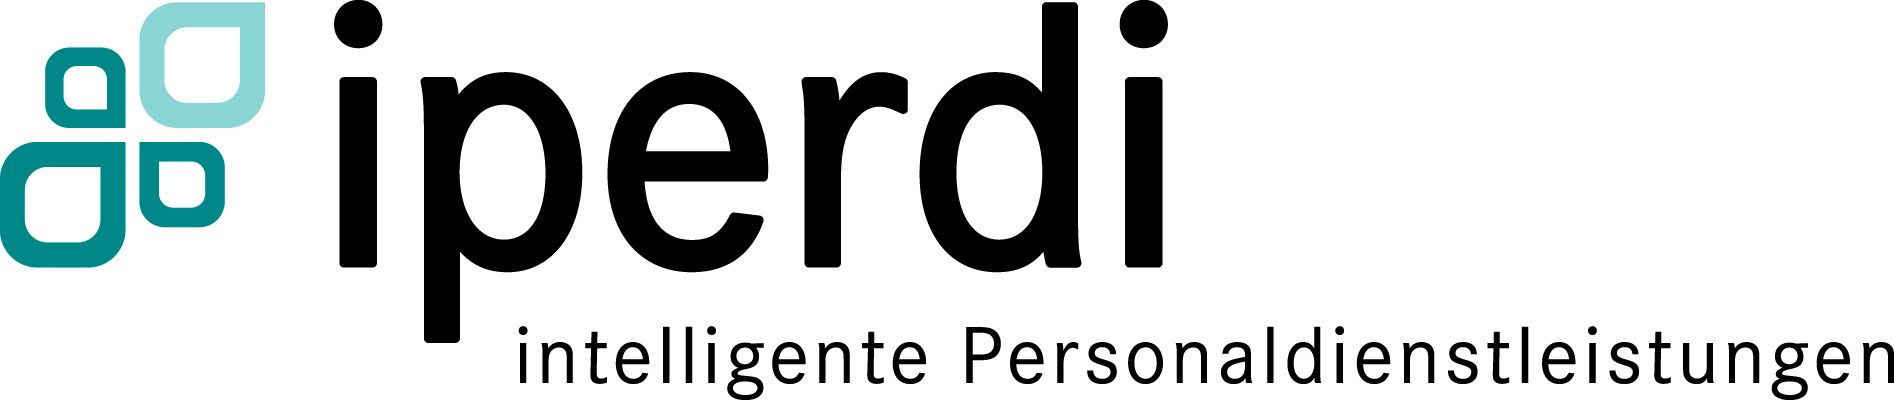 iperdi GmbH